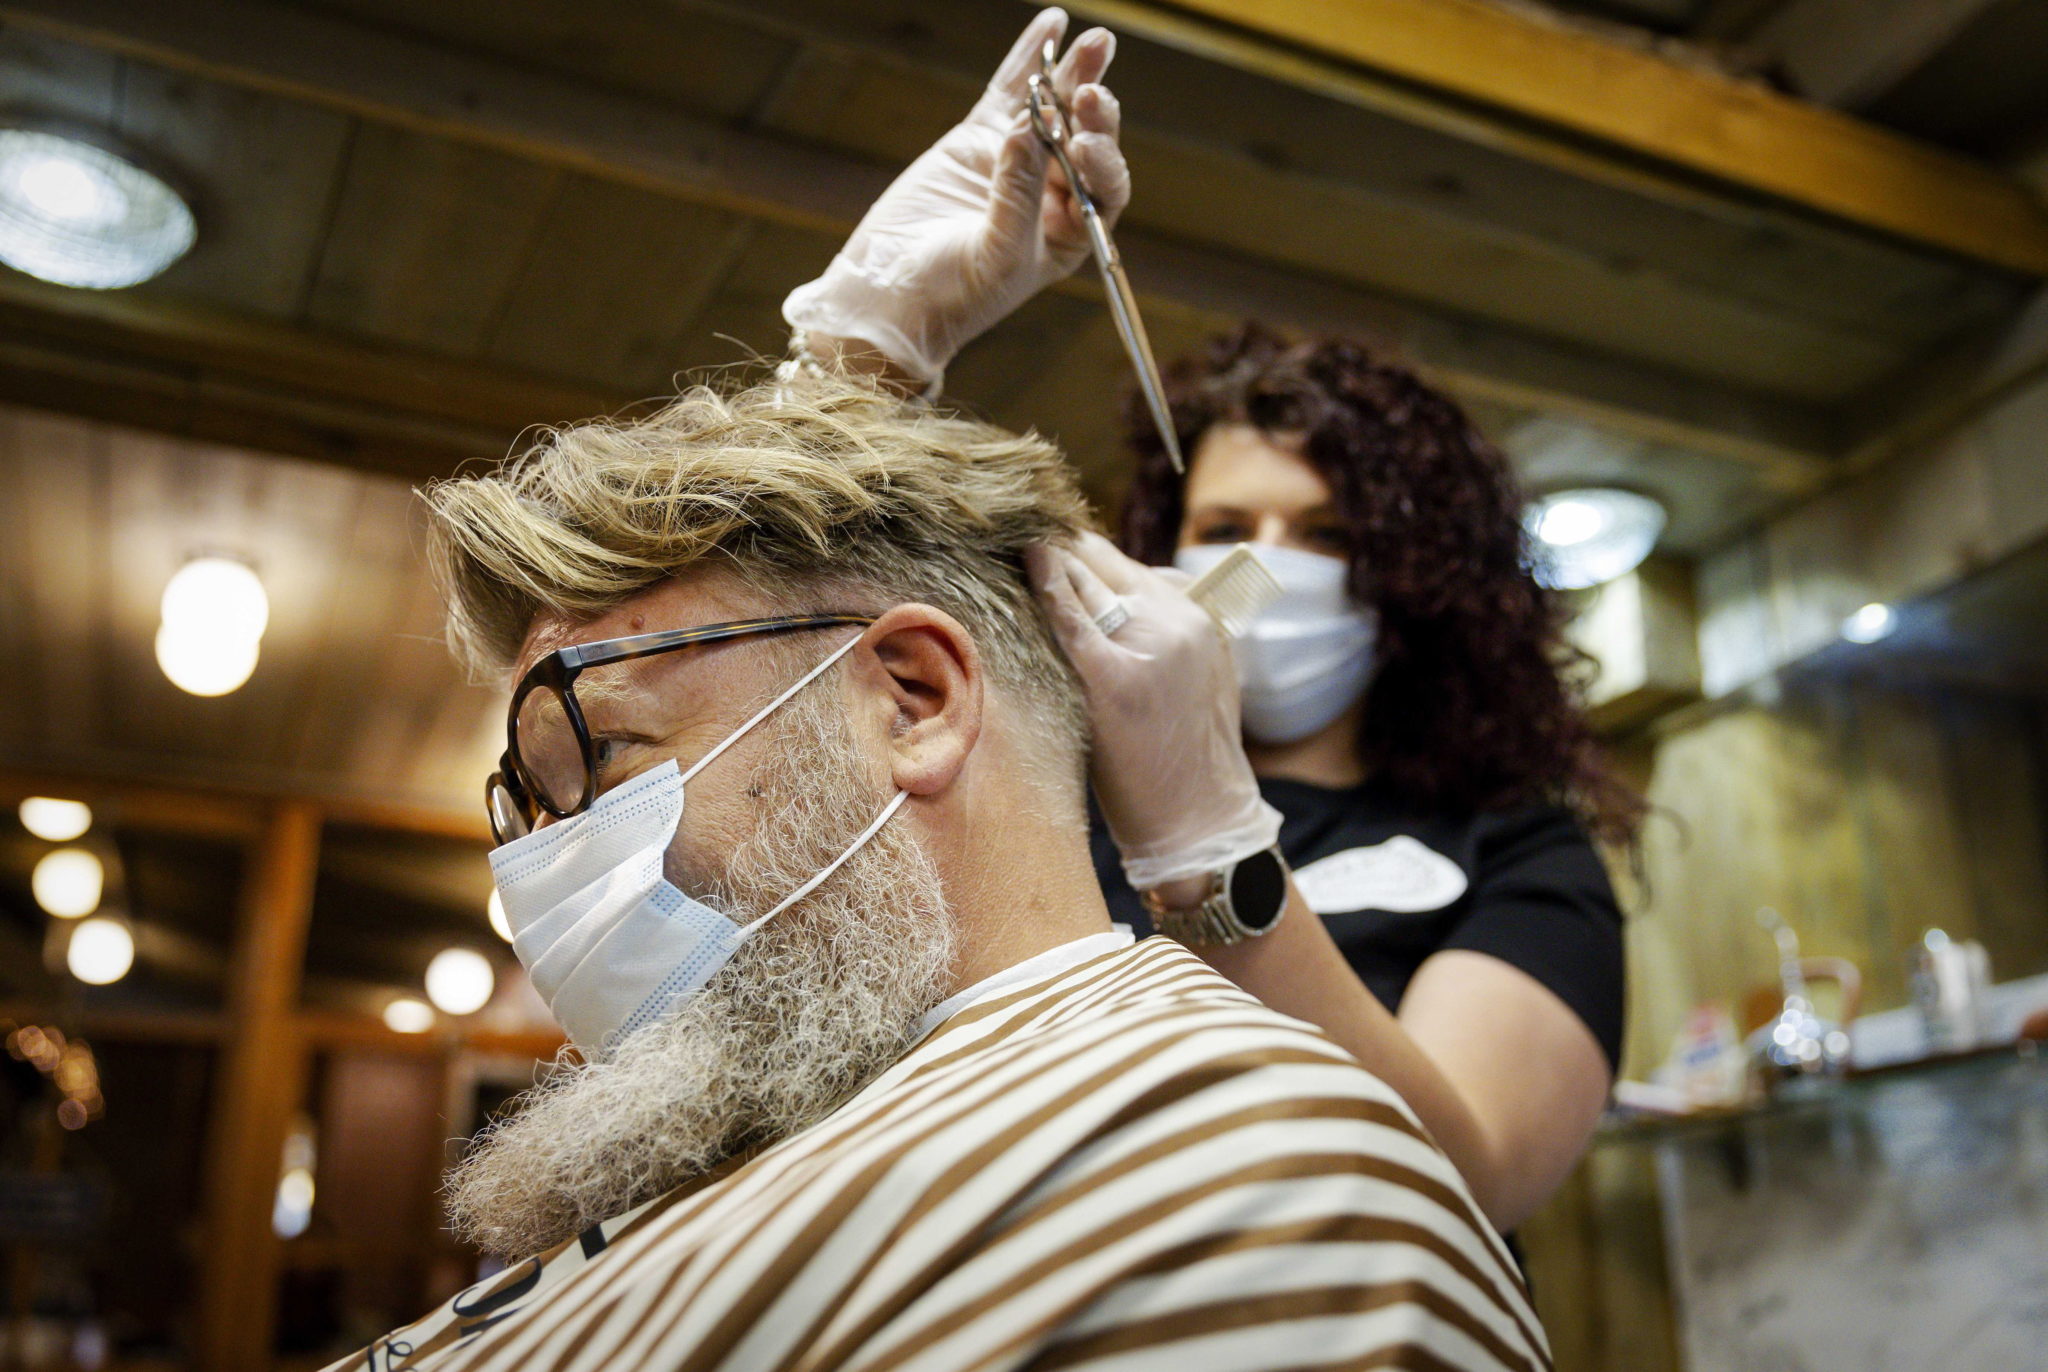 W Królestwie Niderlandów do pracy ruszyli fryzjerzy. fot. EPA/ROBIN VAN LONKHUIJSEN